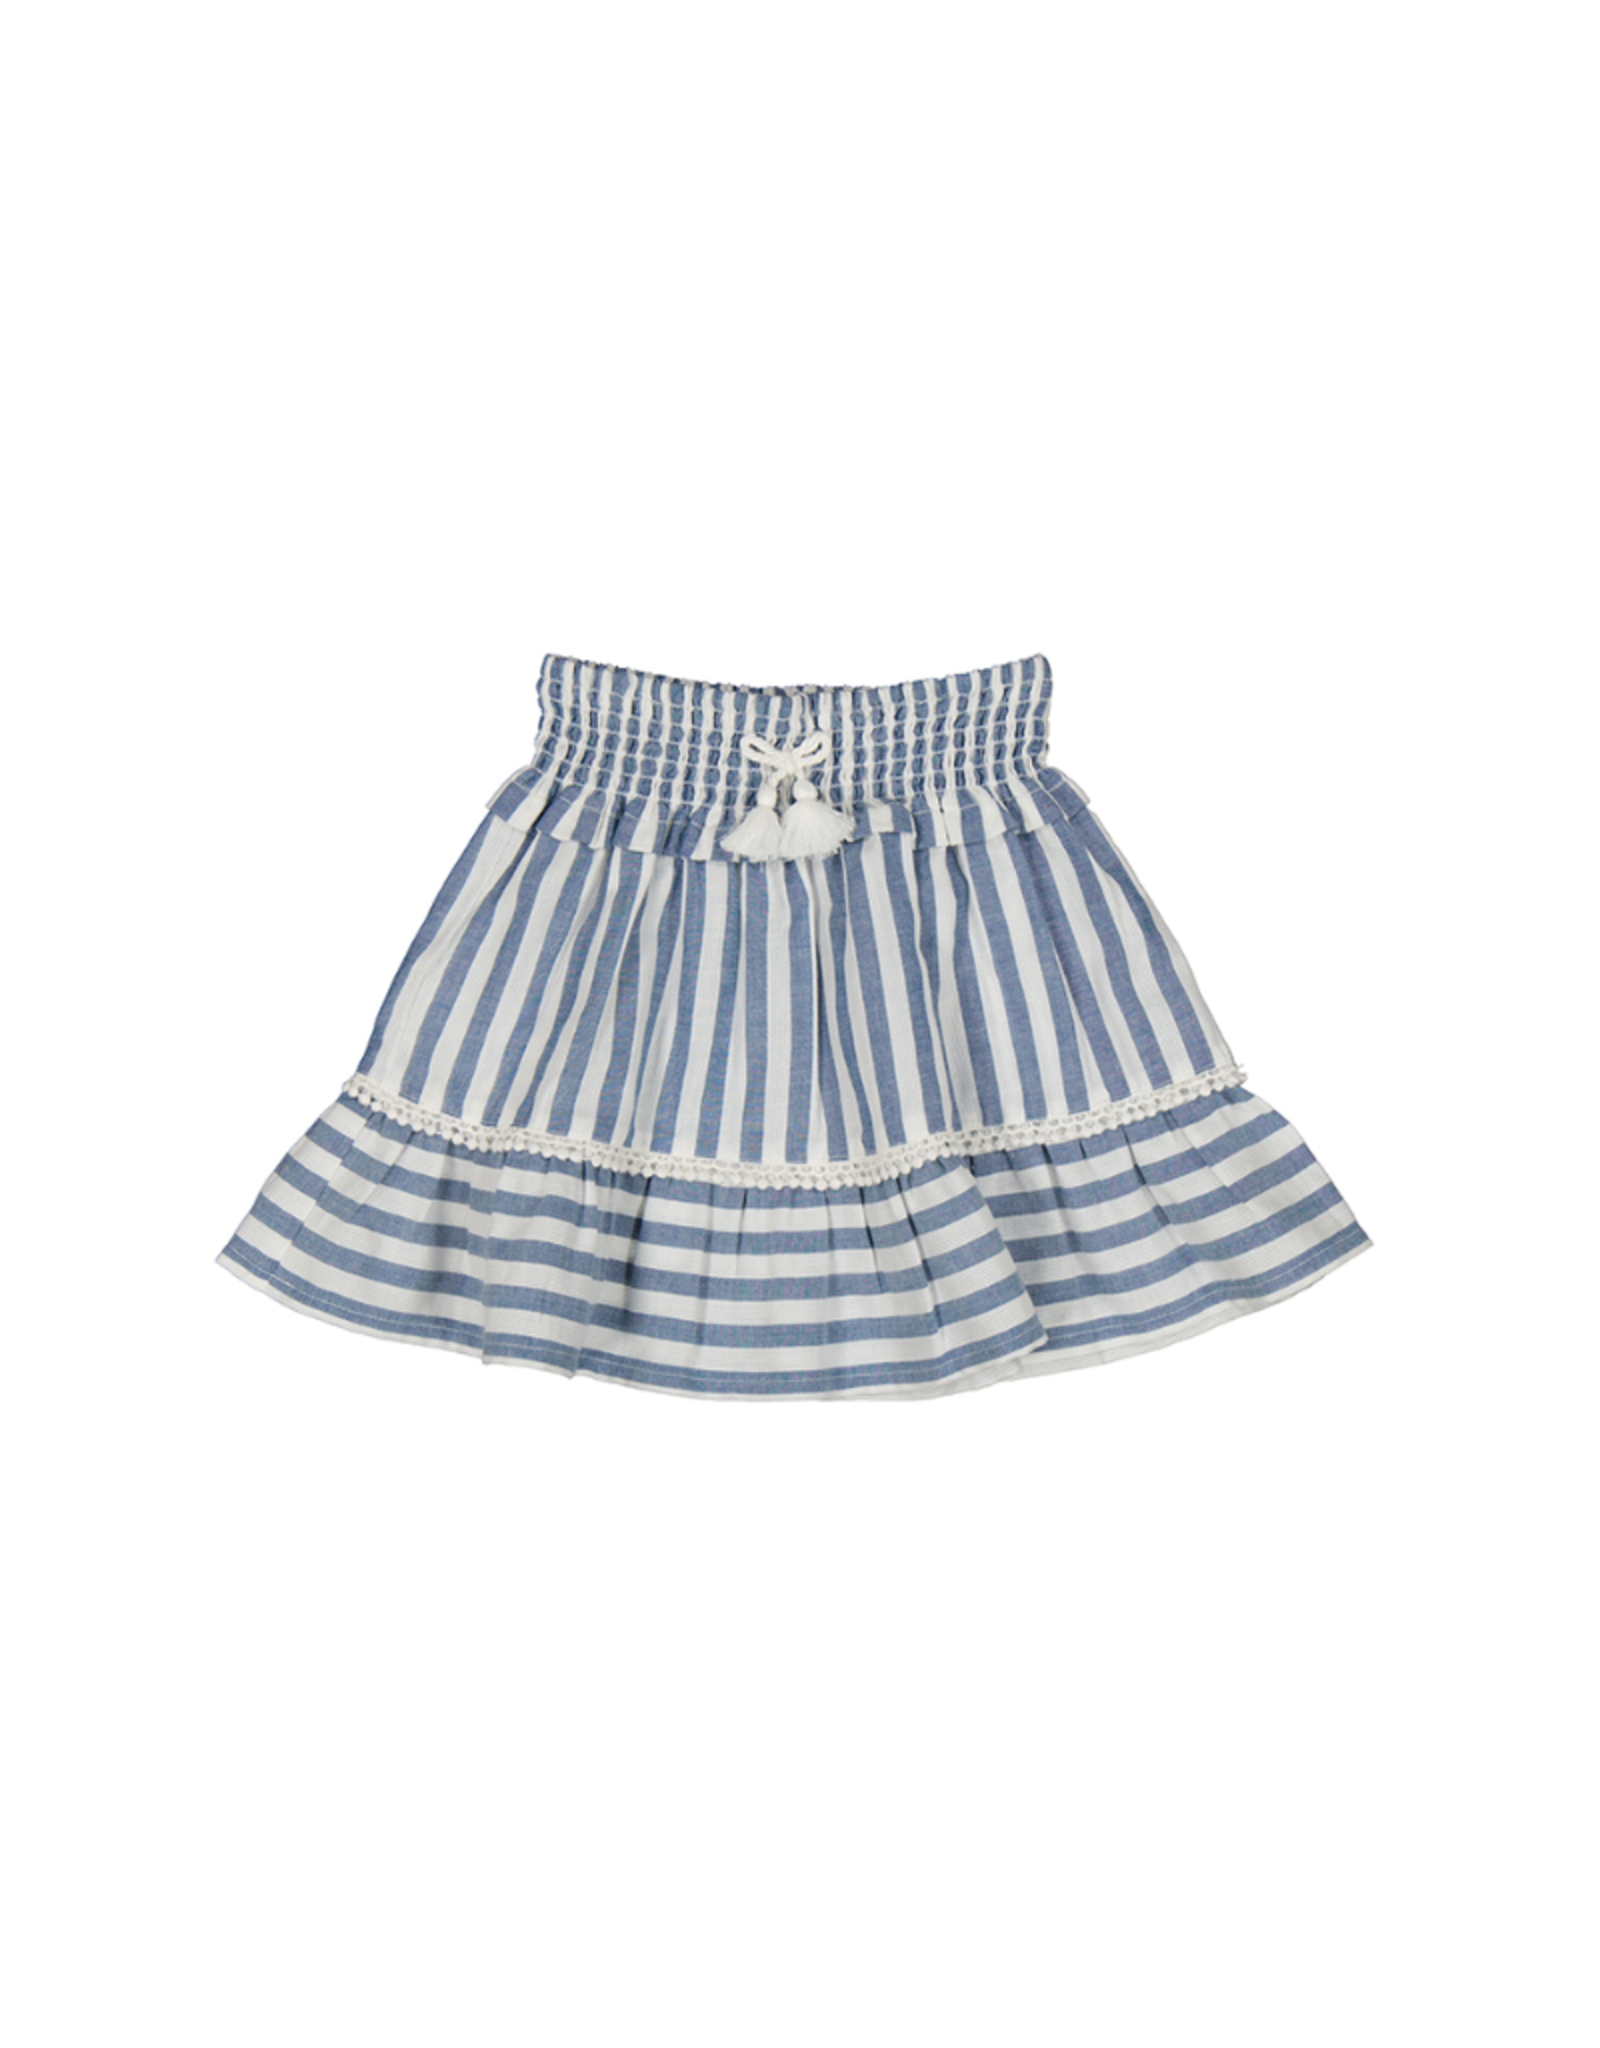 Mayoral Striped Skirt (3903), Porcelana